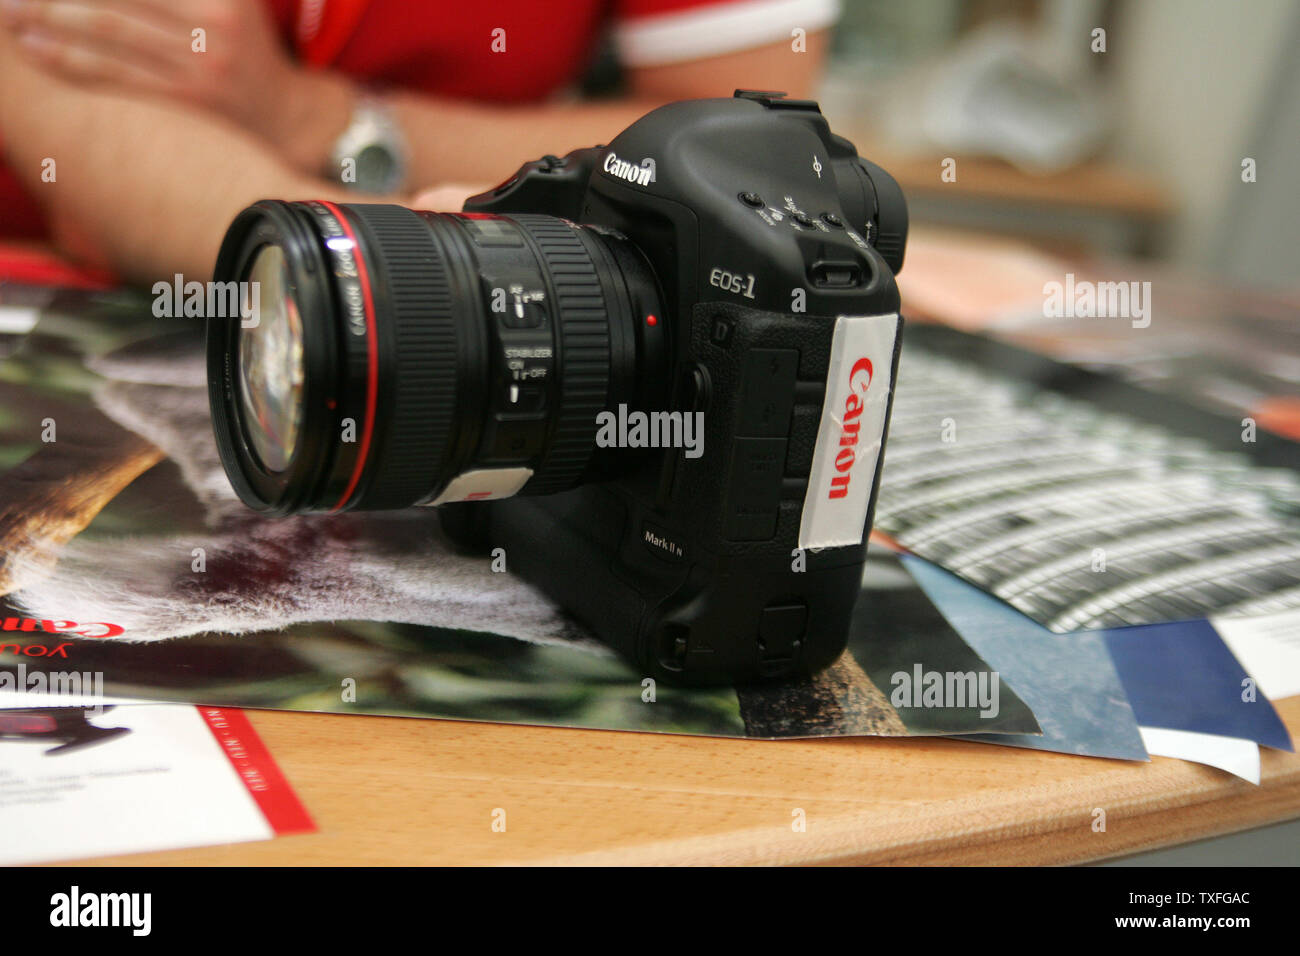 Canon Presenta La Nueva Digital Profesional Eos 1d Mark Ii N Camara Modelo En Ifa 05